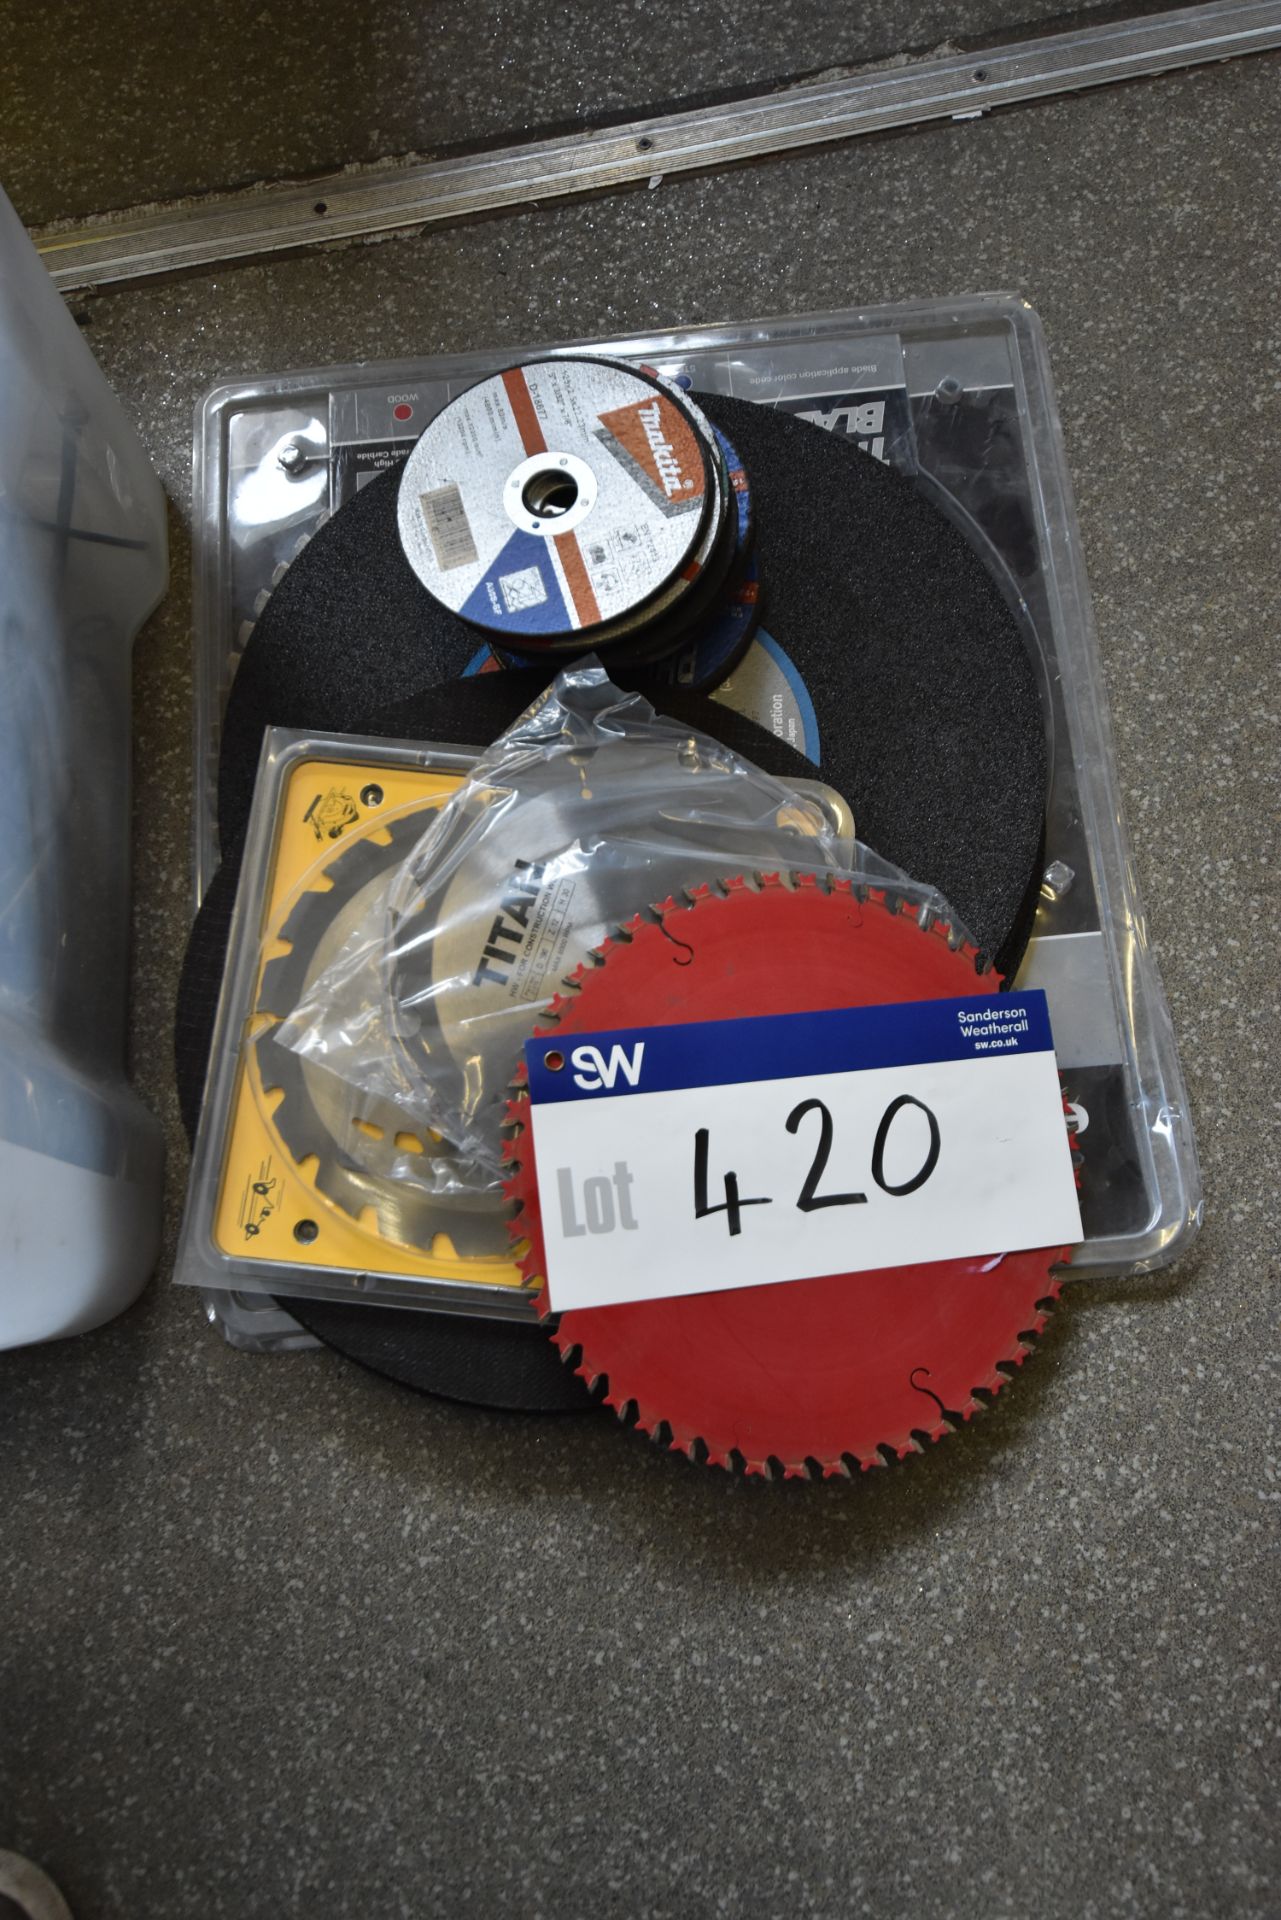 Abrasive Discs and Circular Saw Discs, as set out